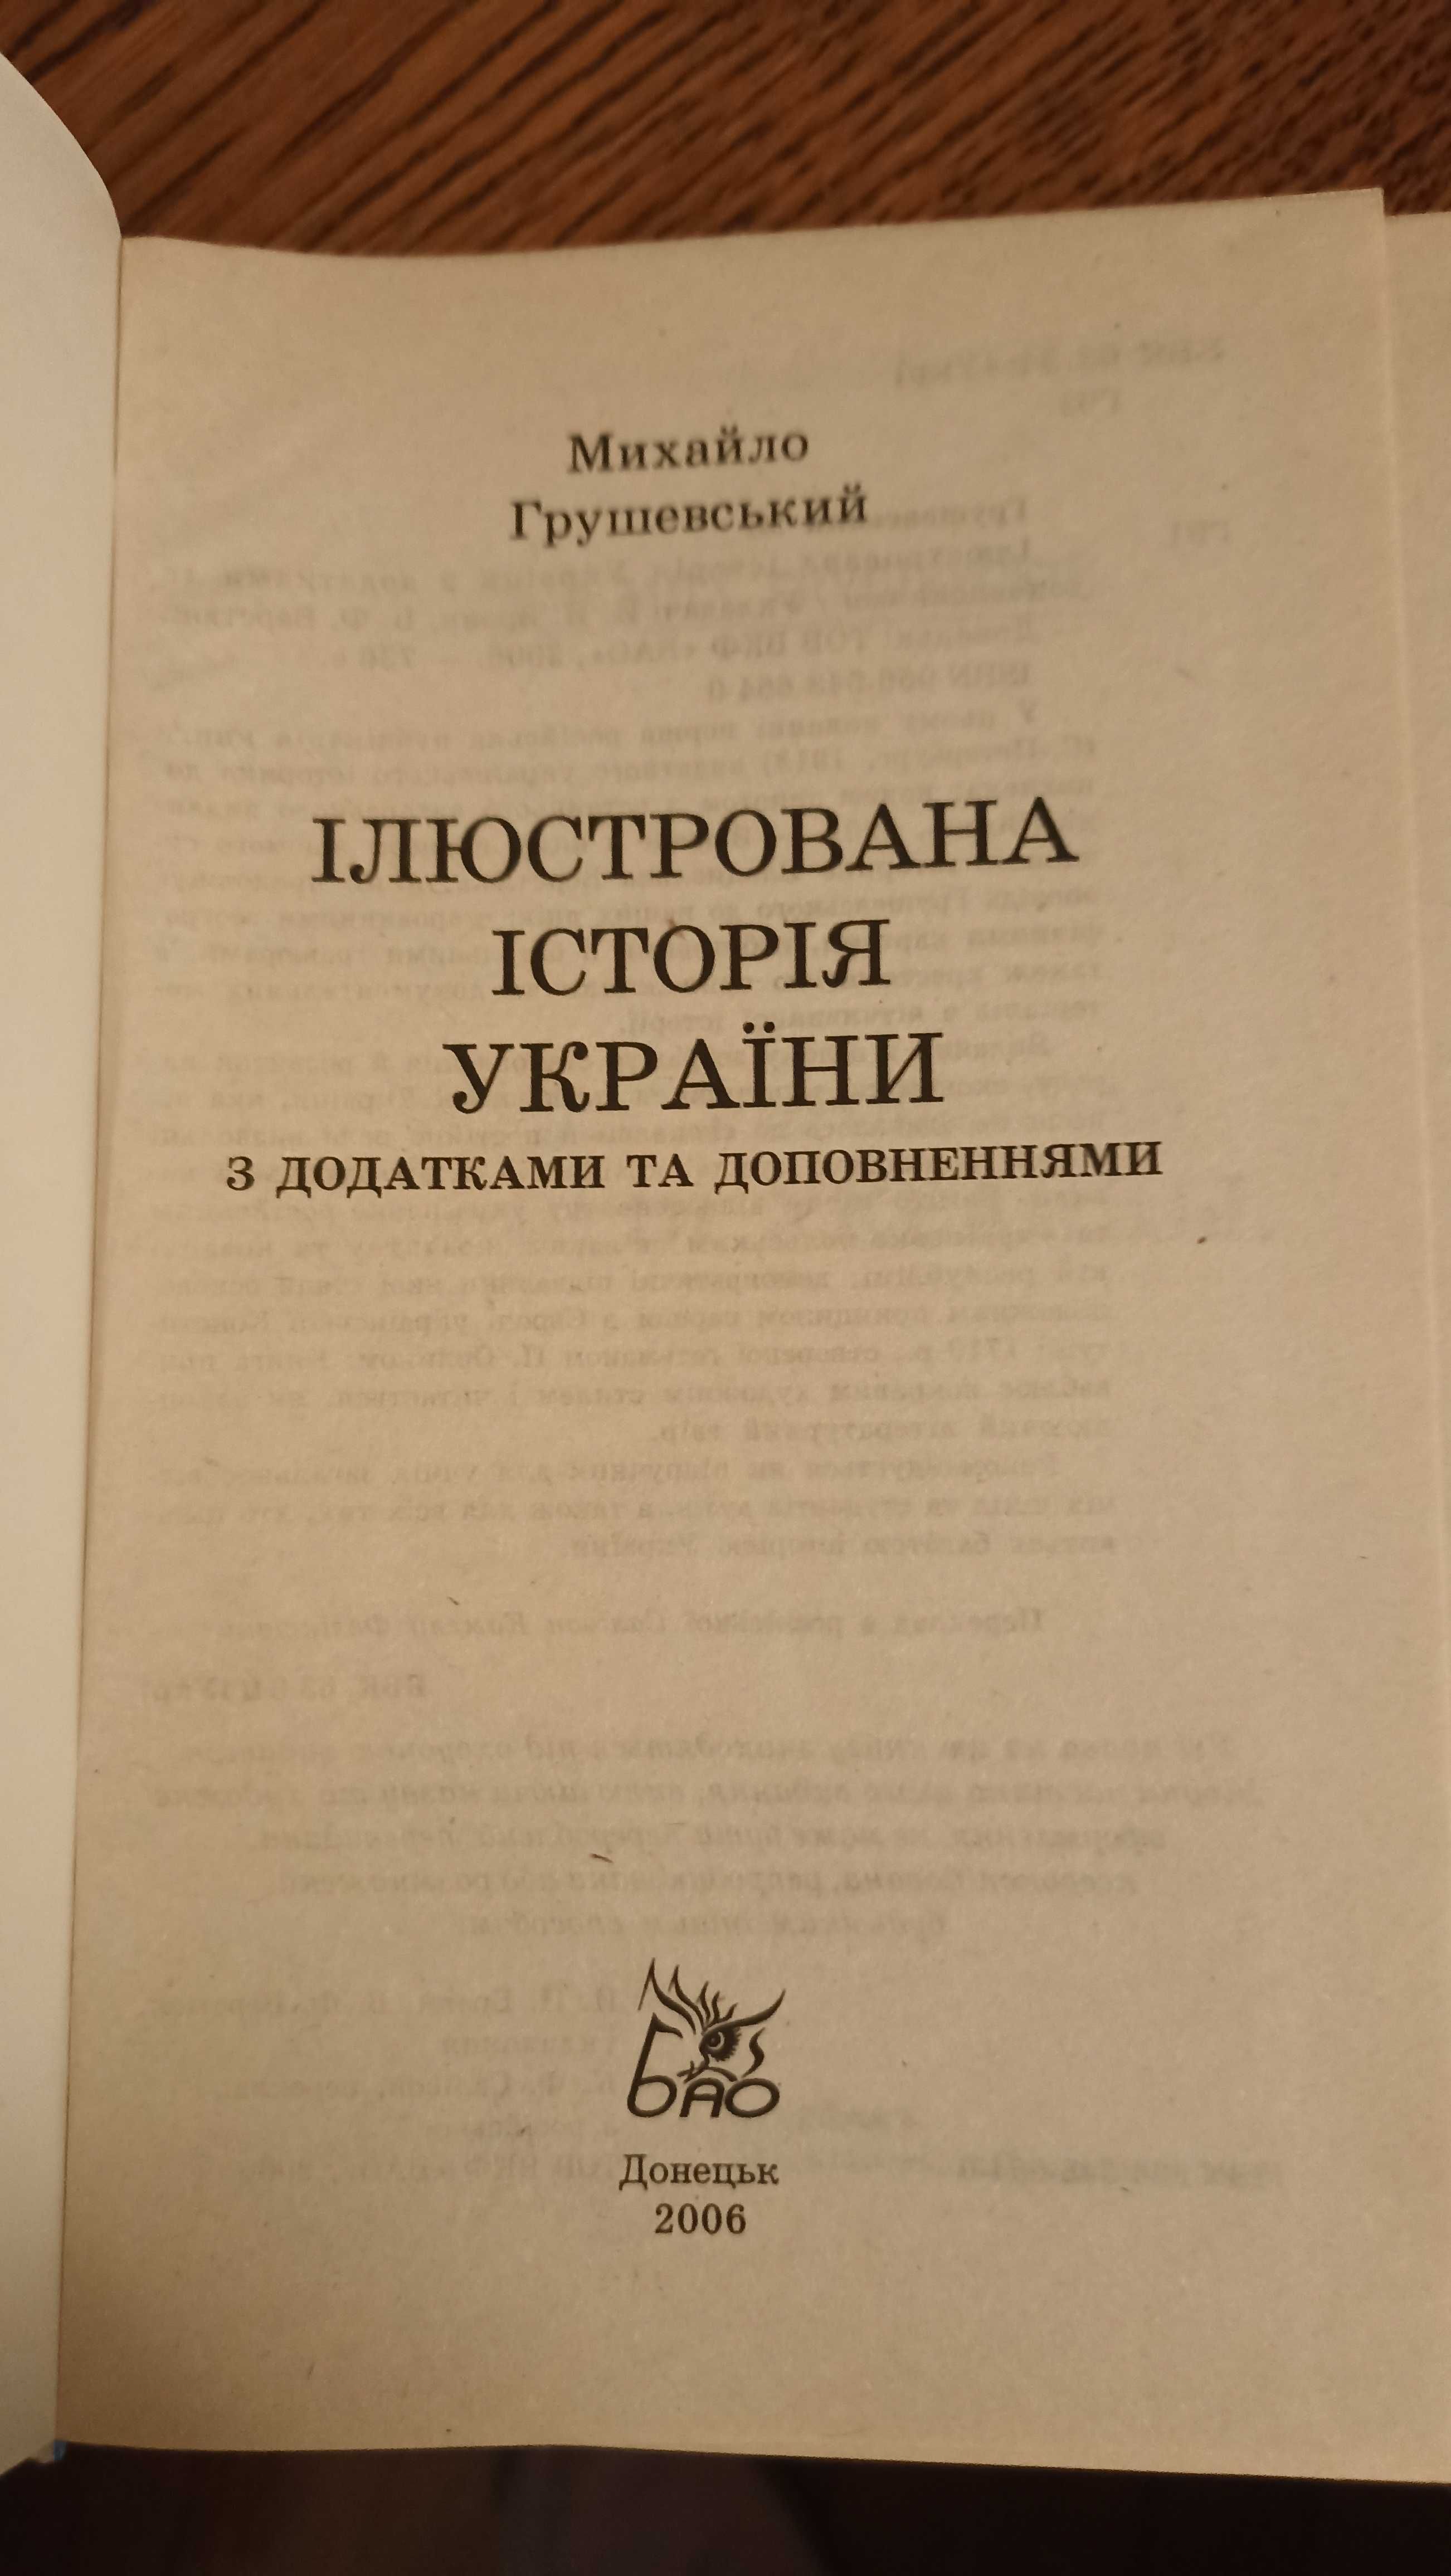 Книга Михайла Грушевського Ілюстрована історія України  нечитана